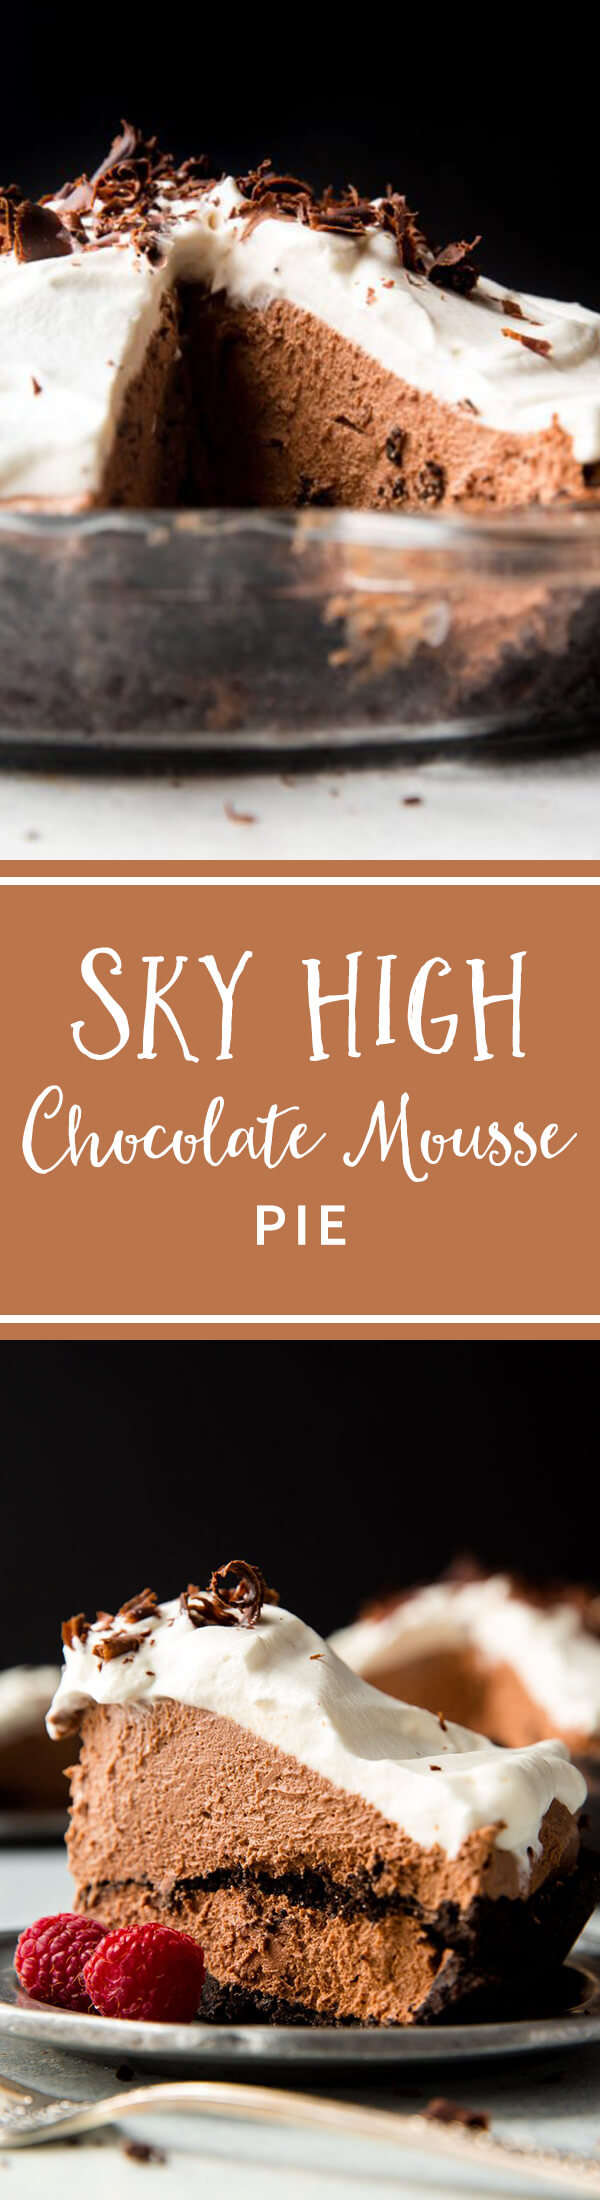 Tarte au chocolat Sky High avec mousse au chocolat, croûte d'Oreo et crème fouettée! Complètement divin! Recette sur sallysbakingaddiction.com